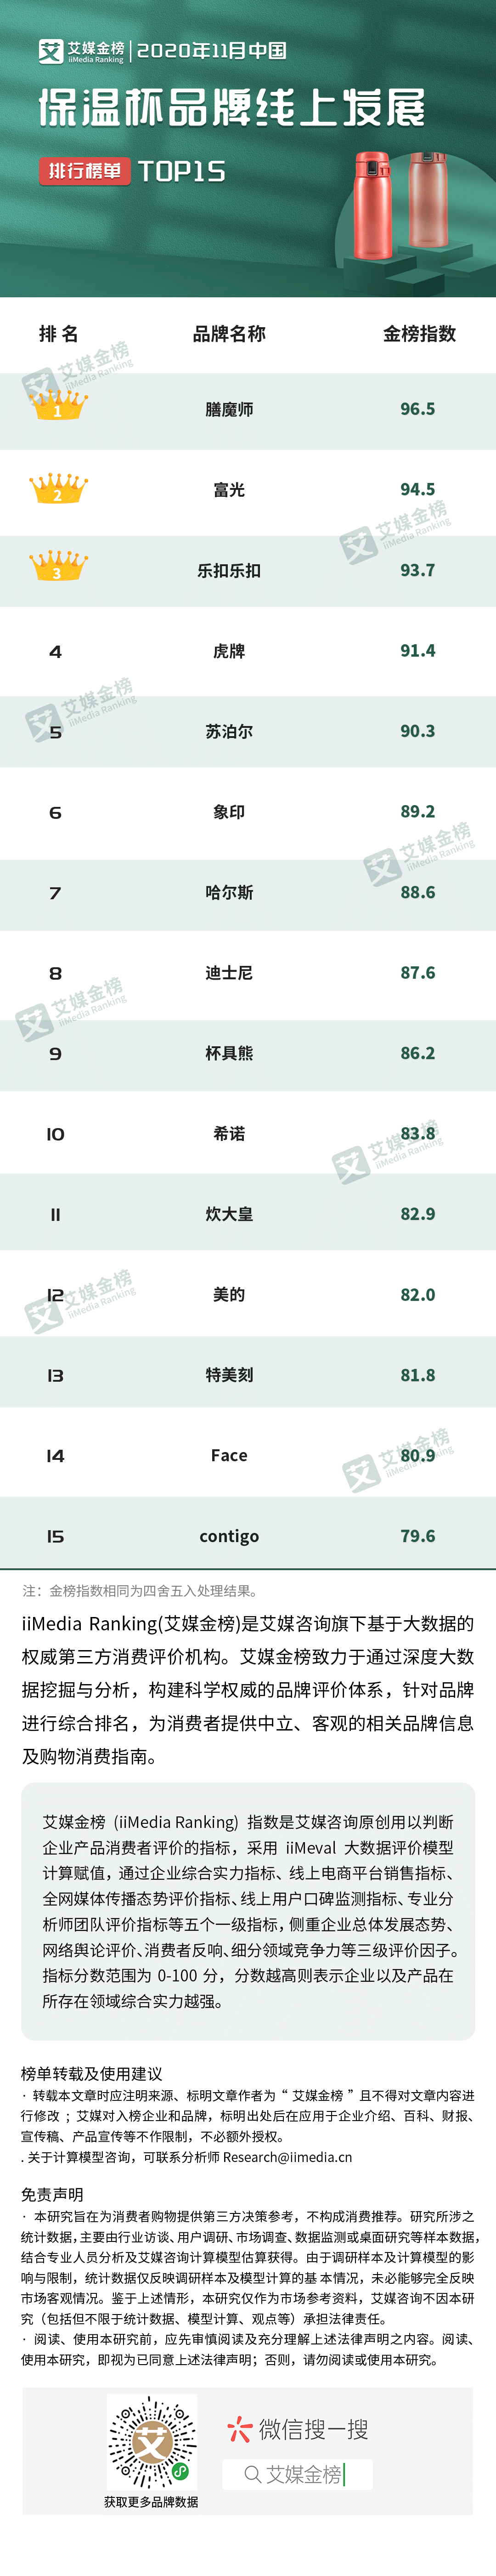 保温杯十大品牌排行榜_2020年11月中国保温杯品牌线上发展排行榜单TOP15